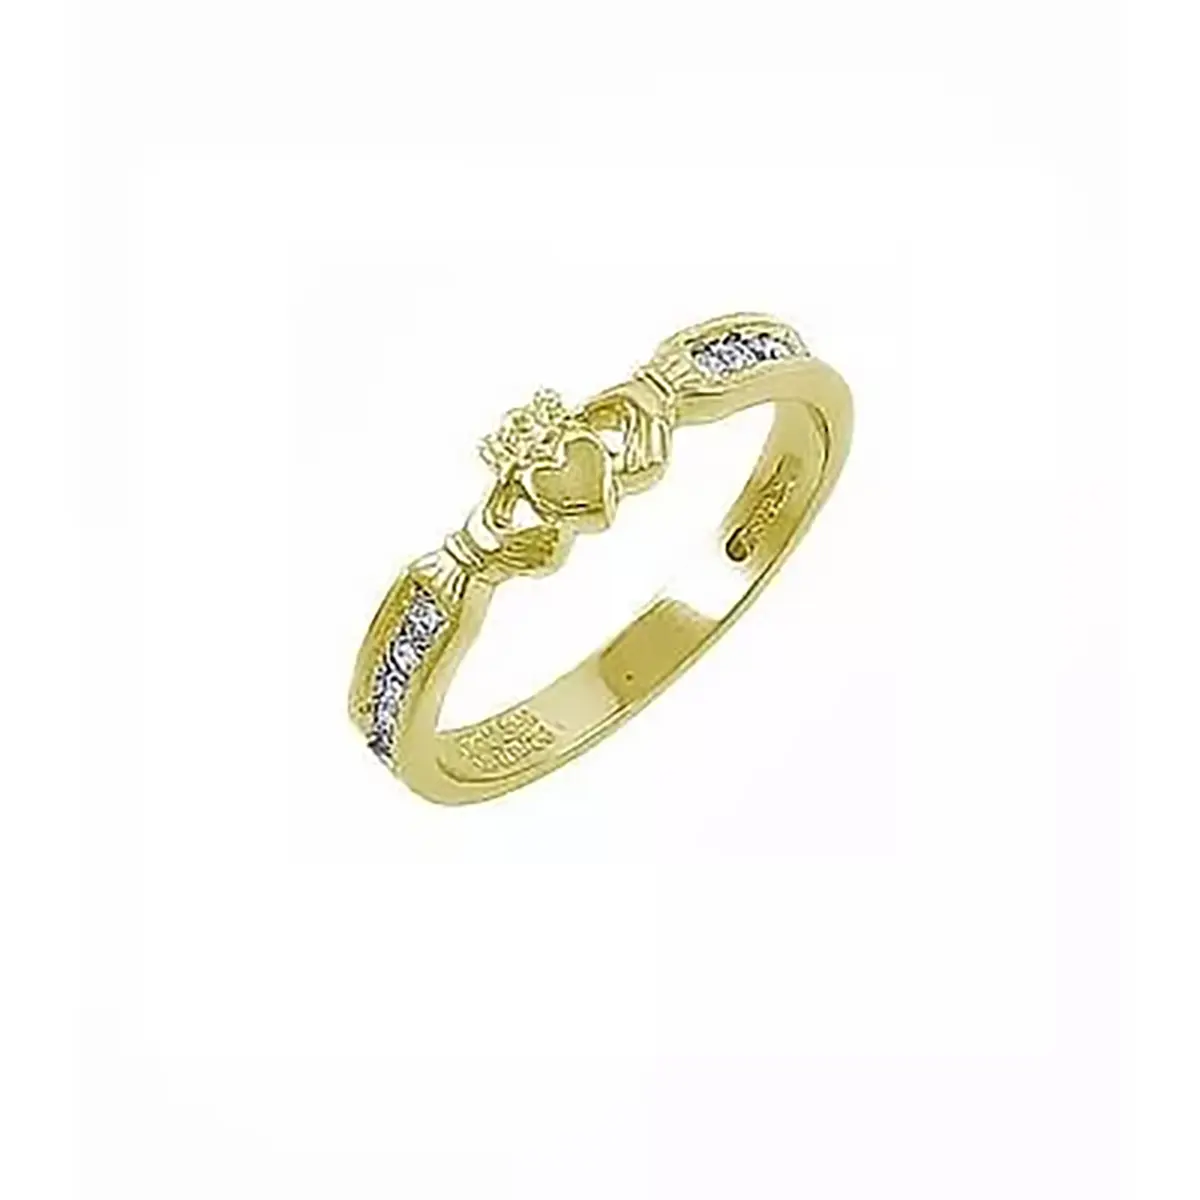 Claddagh Ring Wedding Ring With Brilliant Cut Diamond...